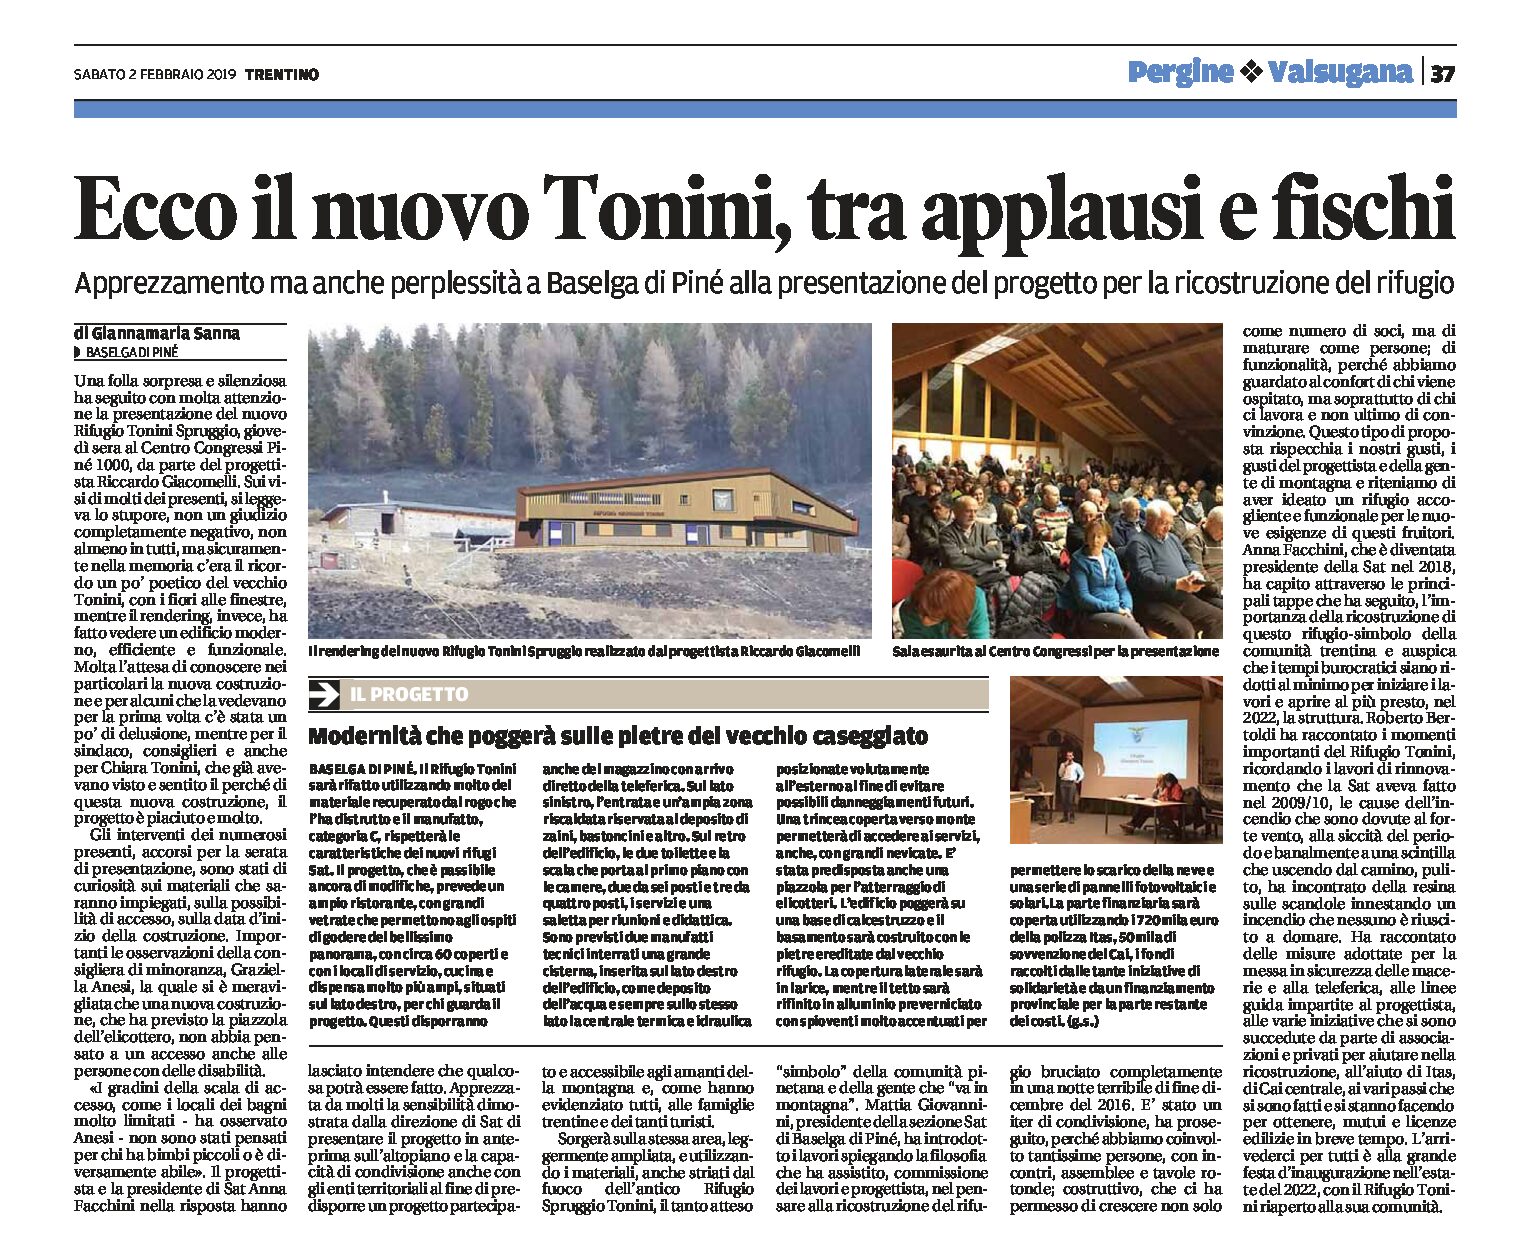 Rifugio Tonini: presentazione del progetto tra applausi e fischi